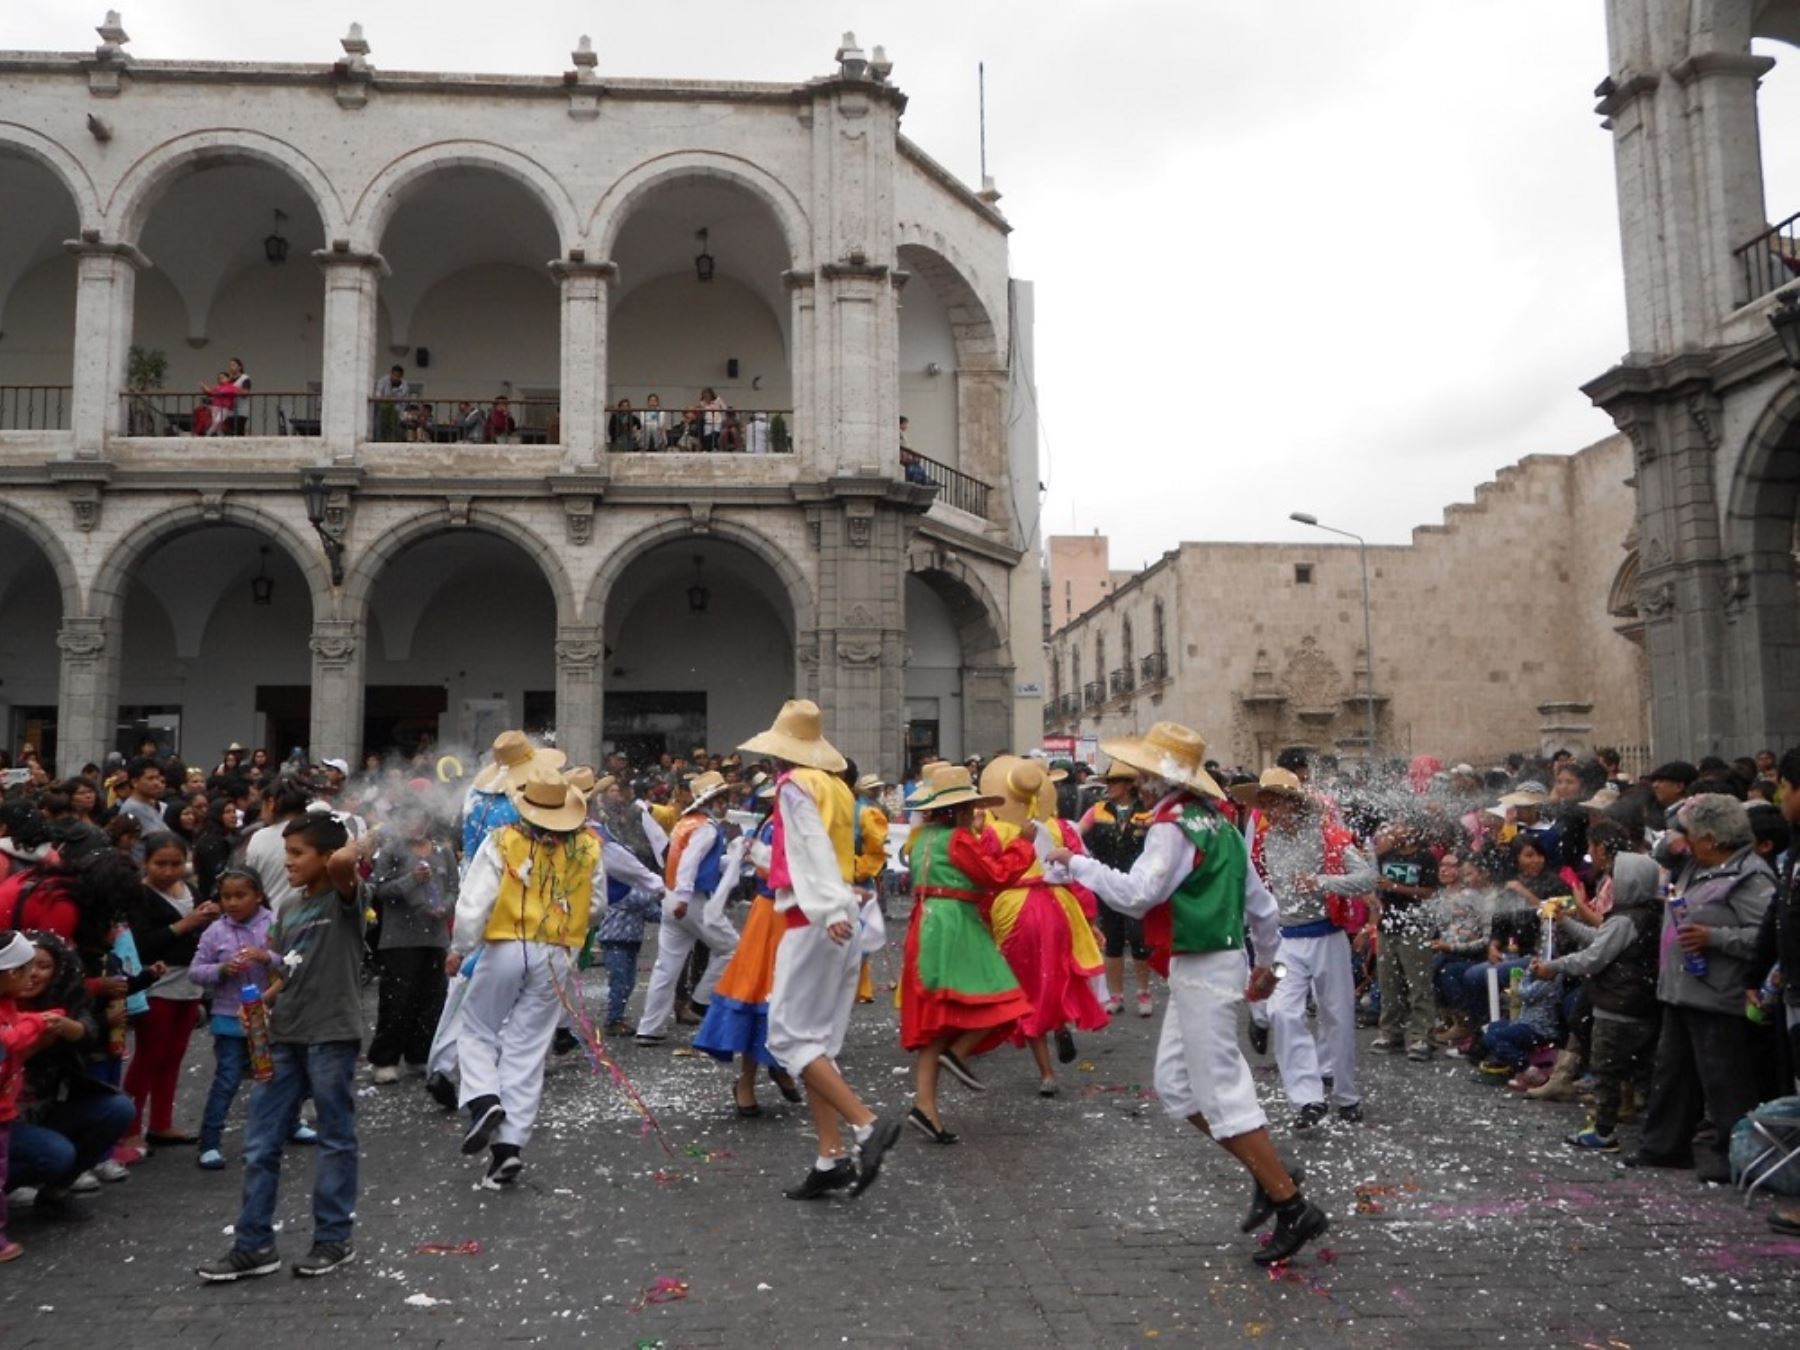 Con serpentina, polvos y espuma los arequipeños celebran con algarabía las fiestas de carnaval por las calles del centro histórico de Arequipa, al desarrollarse hoy el corso de las flores. ANDINA/Difusión